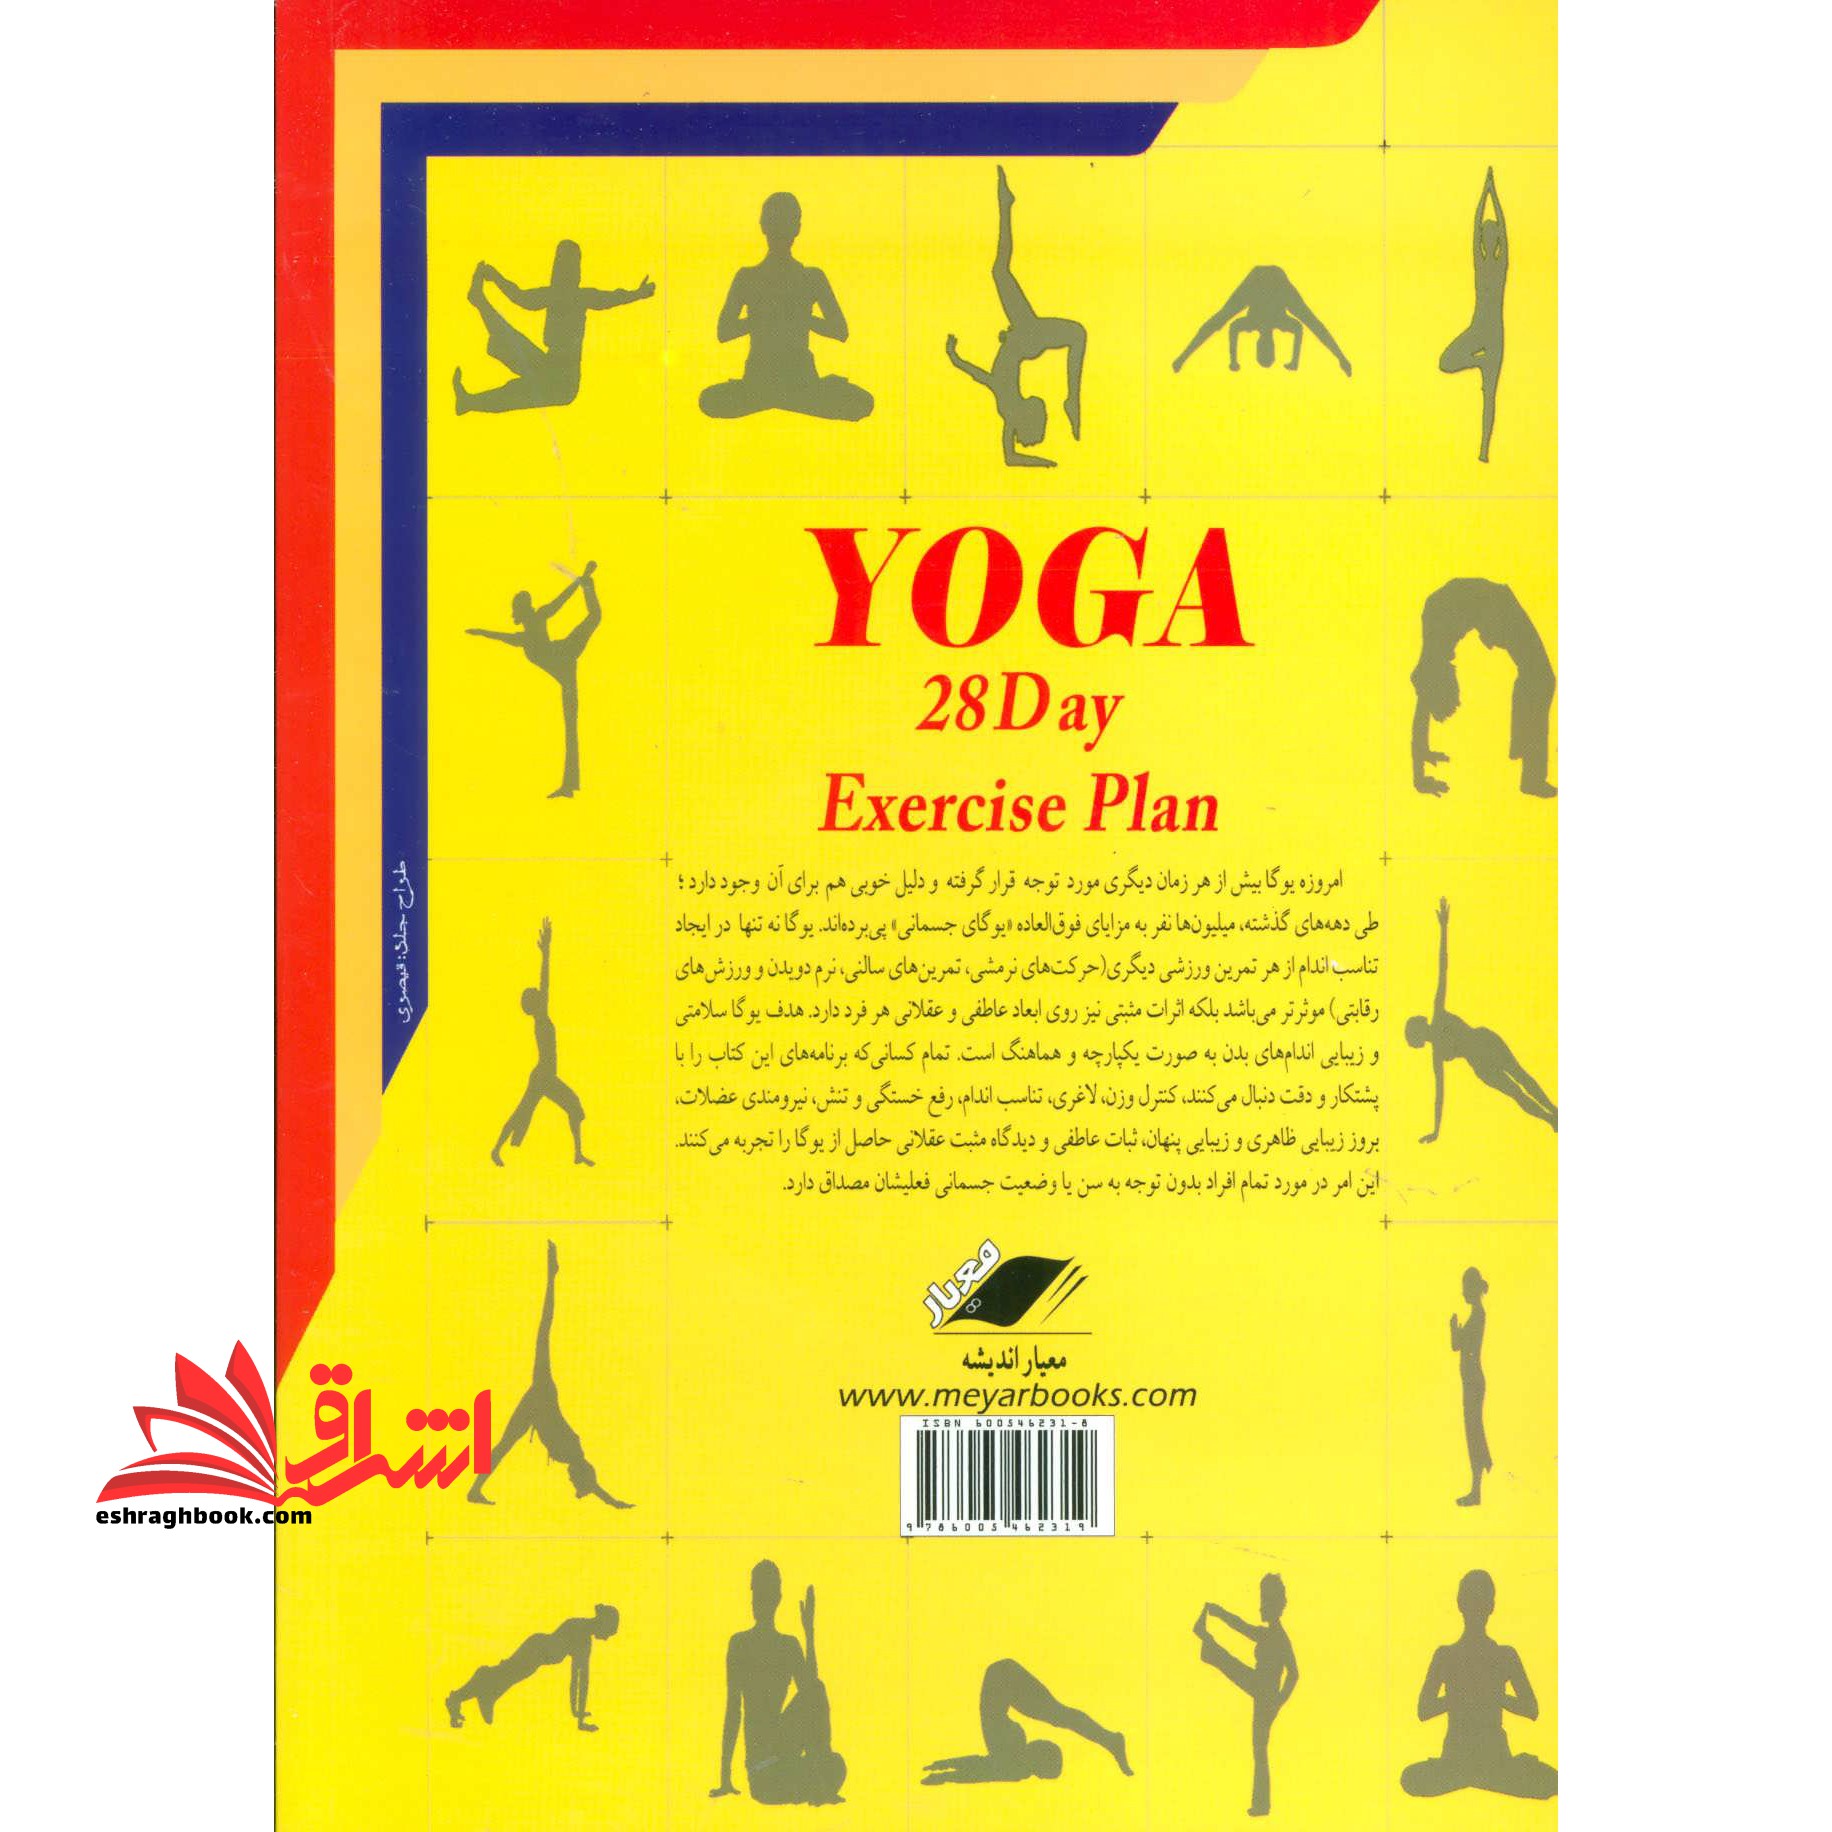 کتاب یوگا در ۲۸ روز - (یک برنامه ۴ هفته ای که رازهای یک زندگی سرشار از سلامت،زیبایی و آرامش را بر شما…)